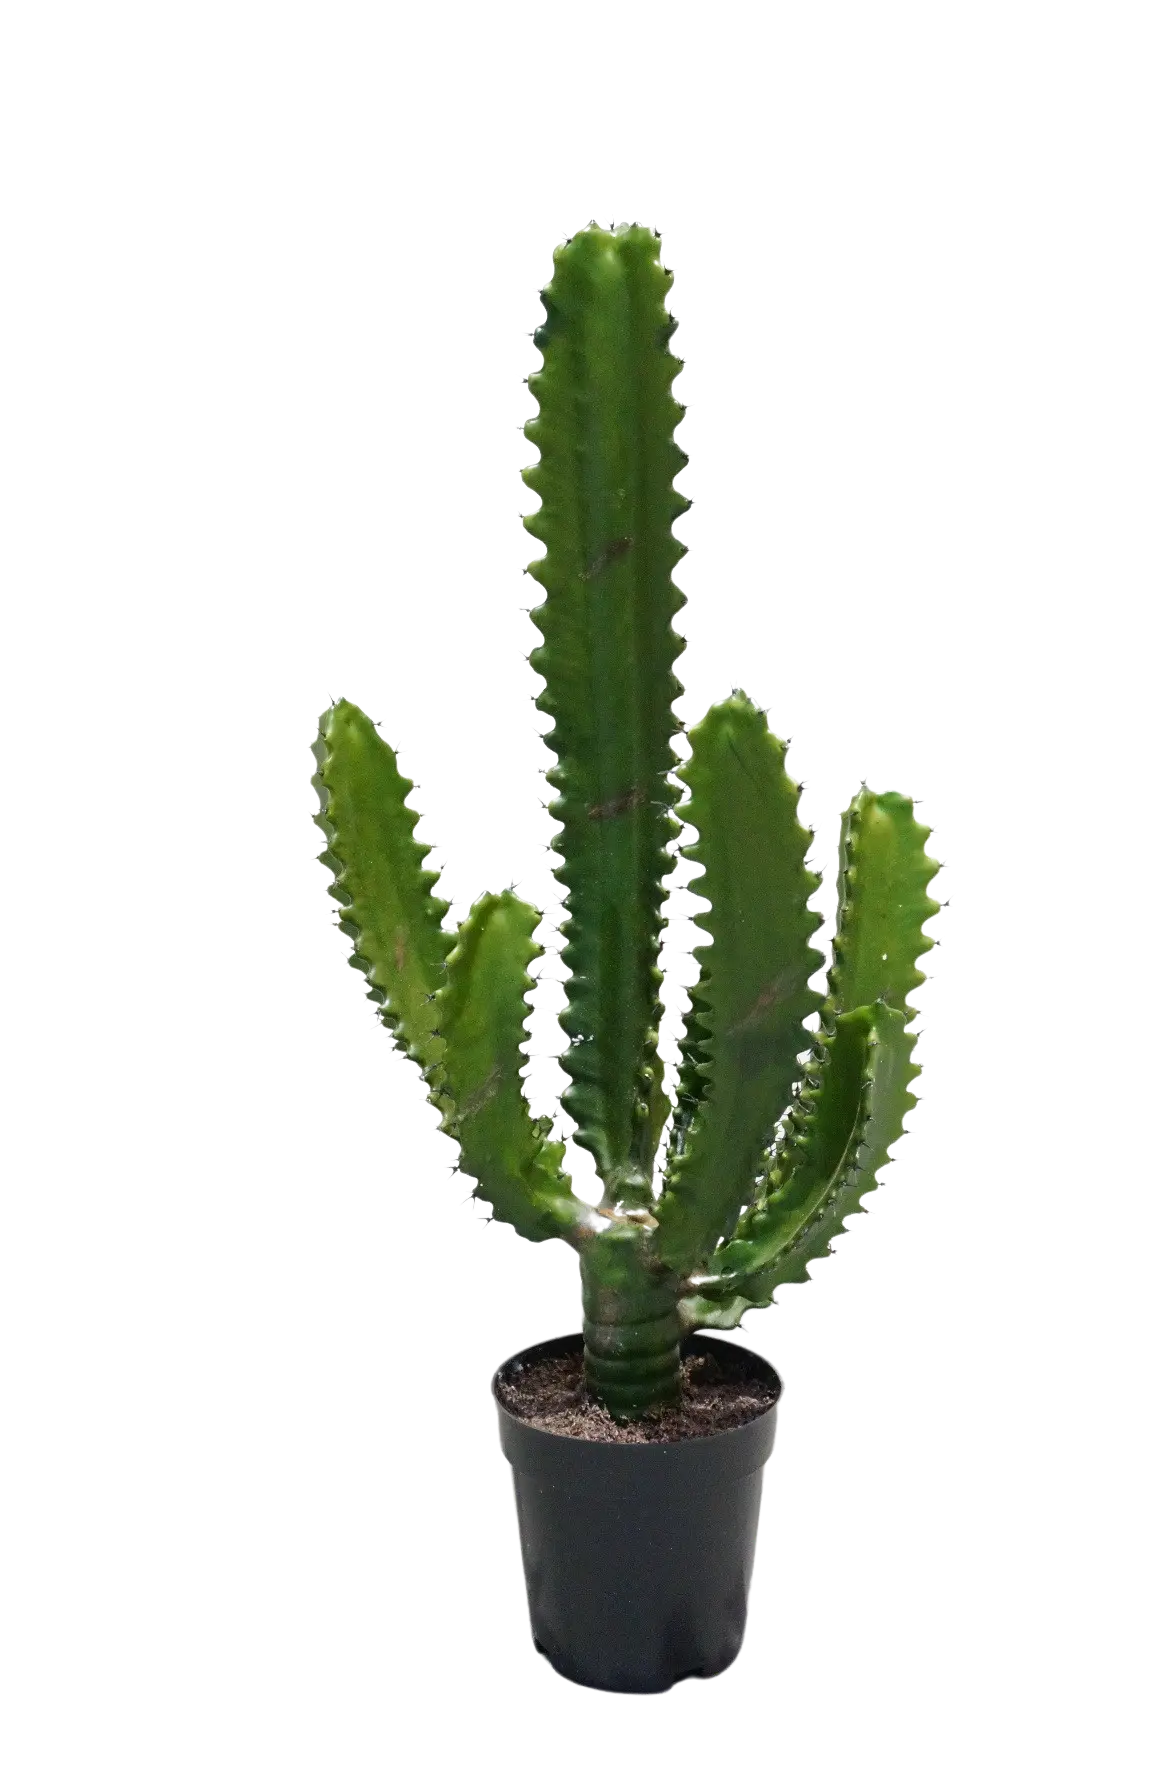 Künstlicher Kaktus - Henri auf transparentem Hintergrund mit echt wirkenden Kunstblättern. Diese Kunstpflanze gehört zur Gattung/Familie der "Kakteen" bzw. "Kunst-Kakteen".